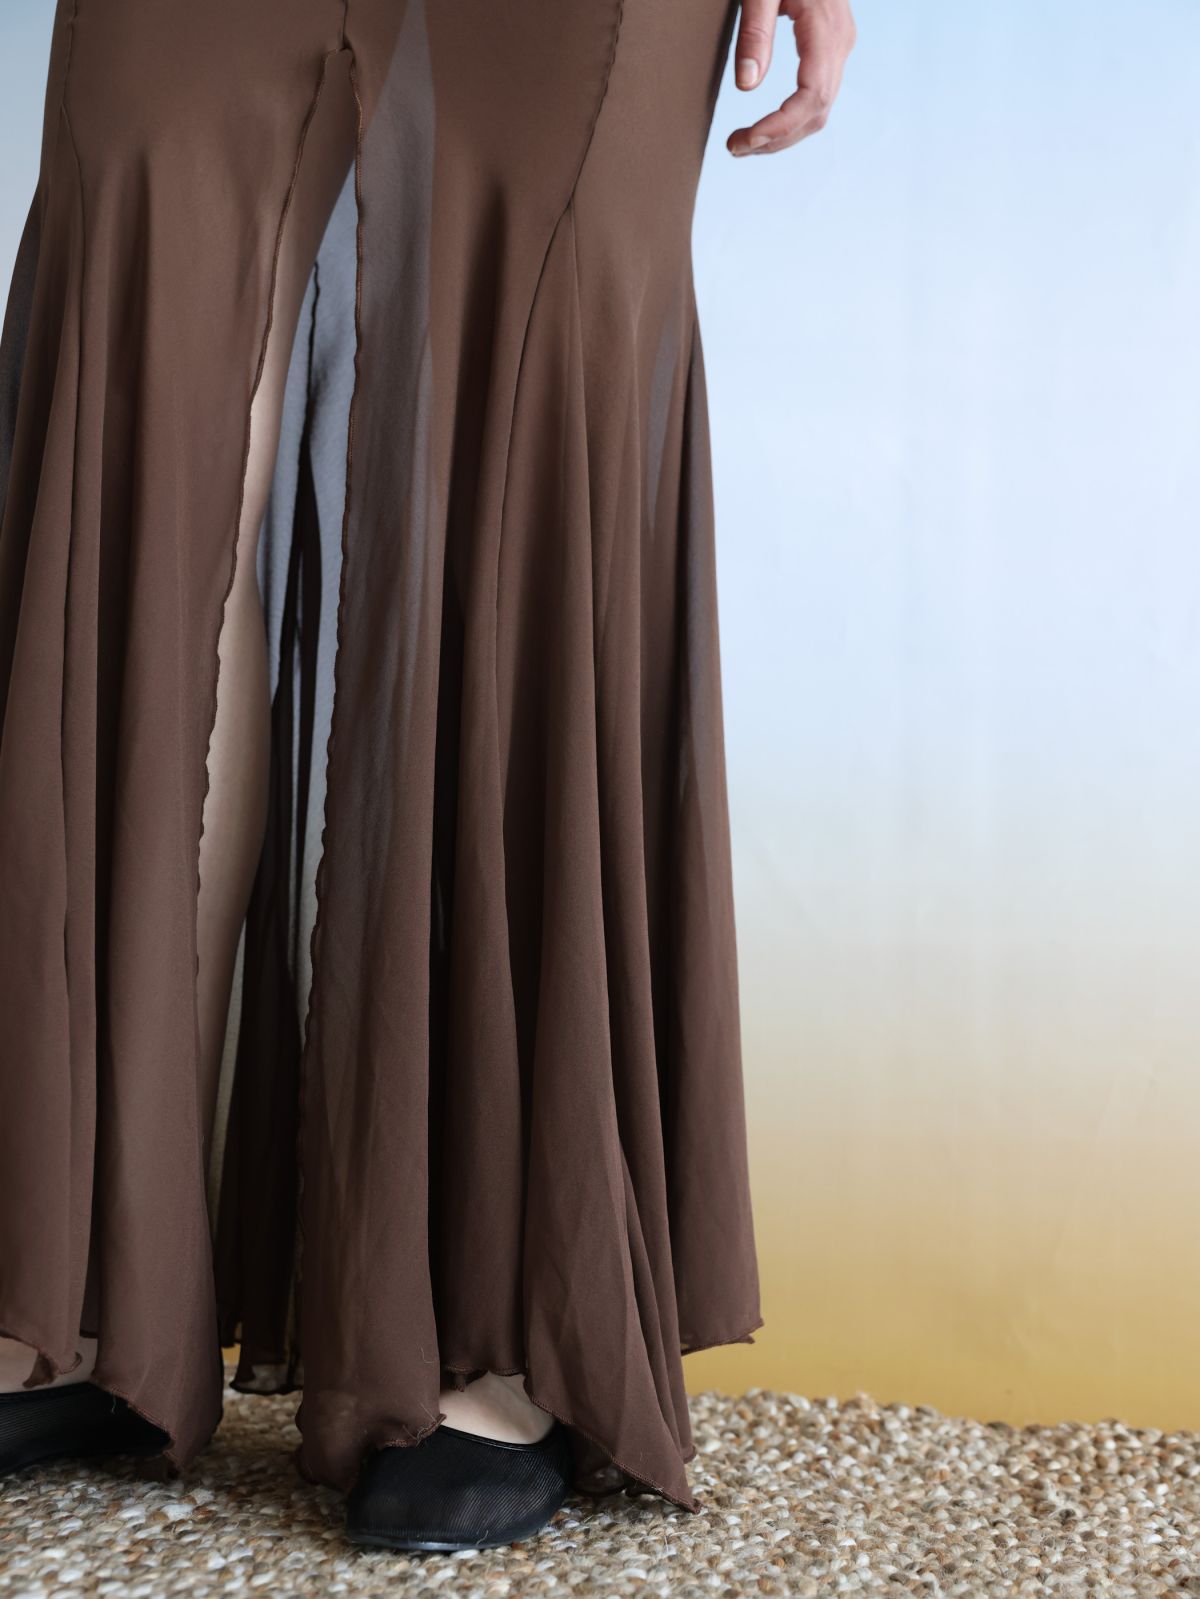  חצאית מקסי שיפון שקפקפה / Elle Sasson של TX COLLAB